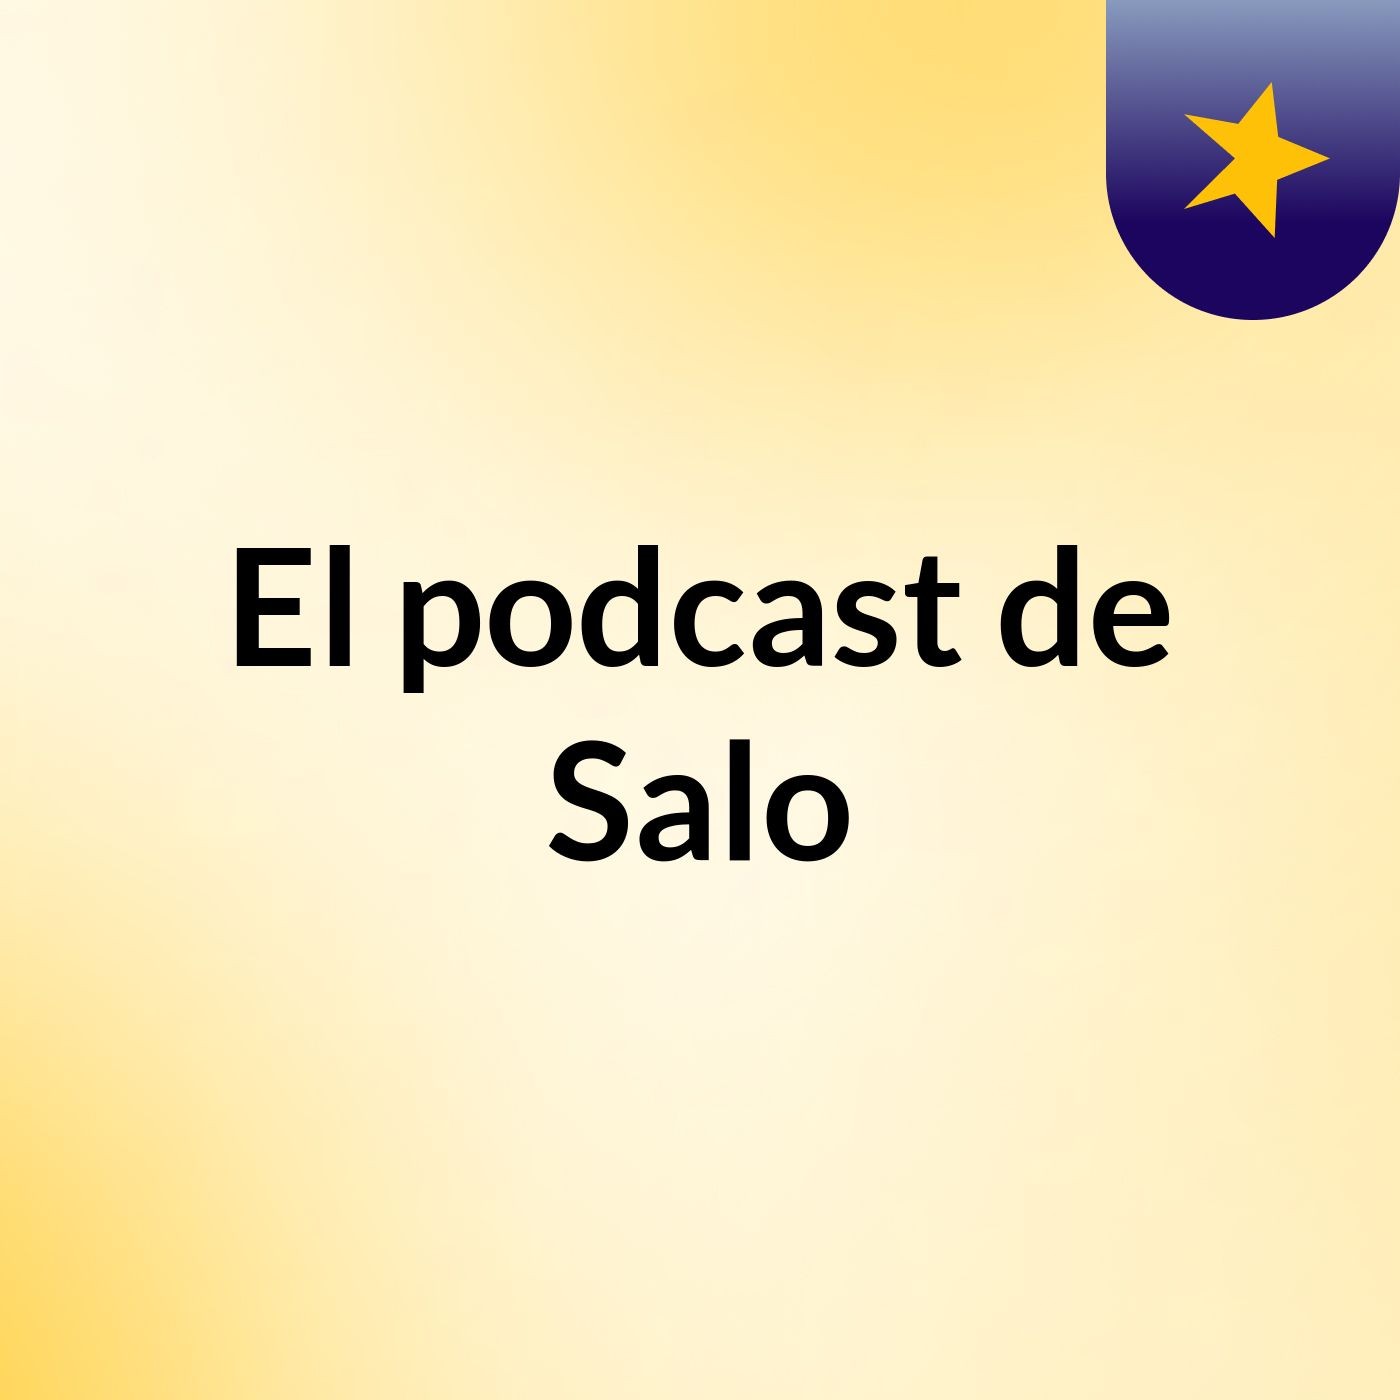 El podcast de Salo